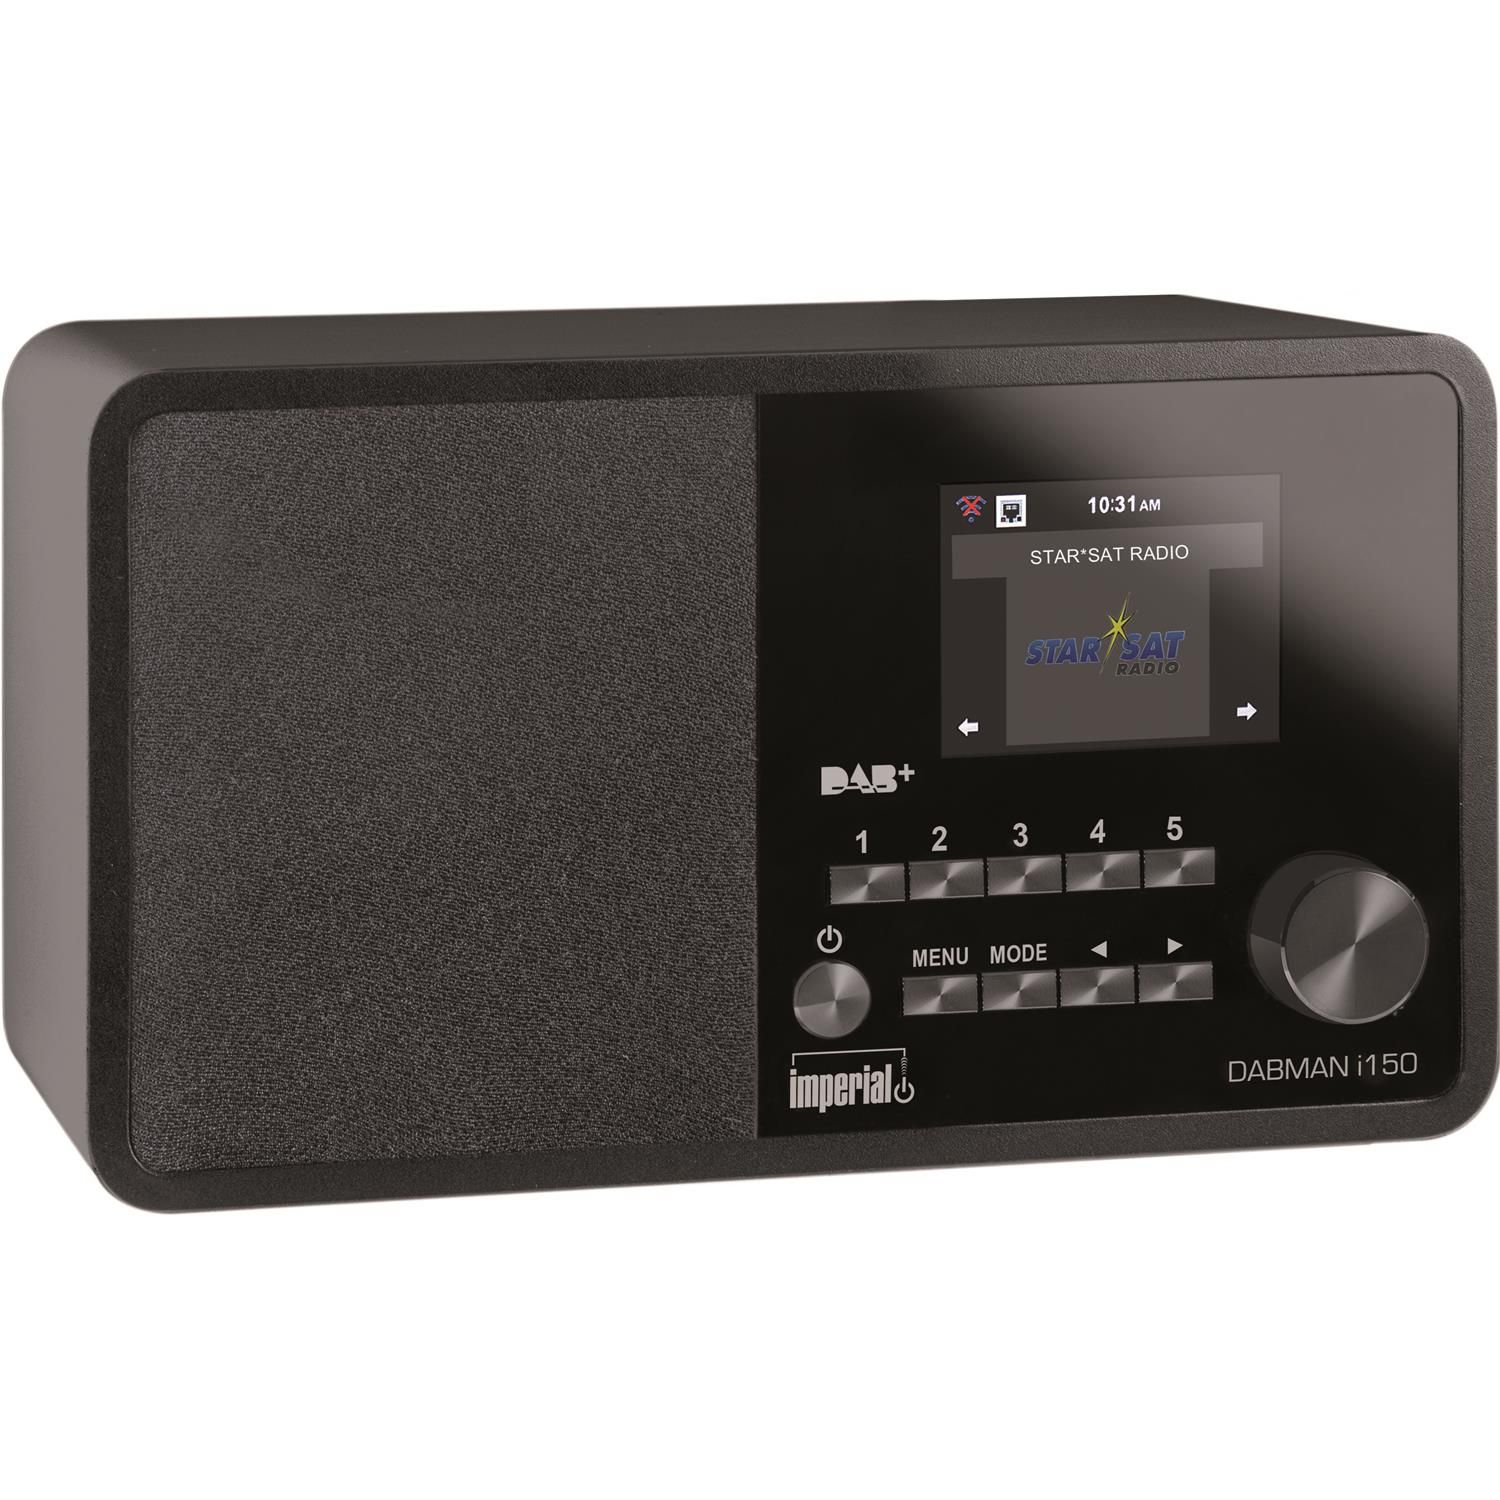 DAB+, Multifunktionsradio, AM, i150 DAB, Radio, Bluetooth, FM, IMPERIAL Internet DABMAN schwarz